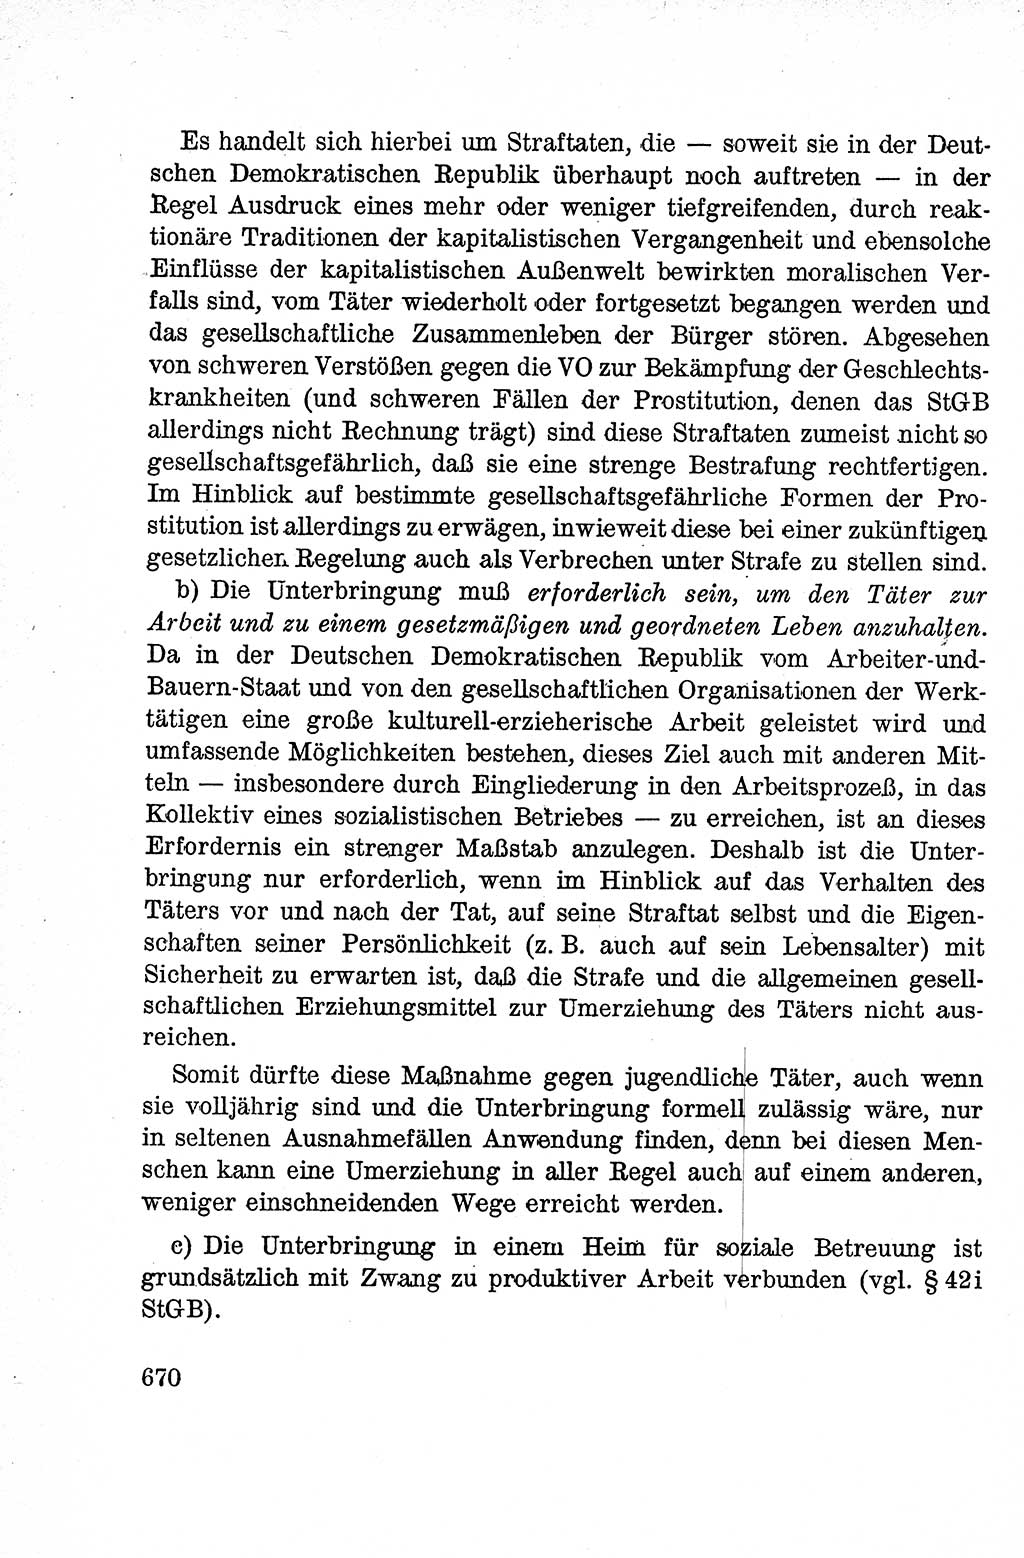 Lehrbuch des Strafrechts der Deutschen Demokratischen Republik (DDR), Allgemeiner Teil 1959, Seite 670 (Lb. Strafr. DDR AT 1959, S. 670)